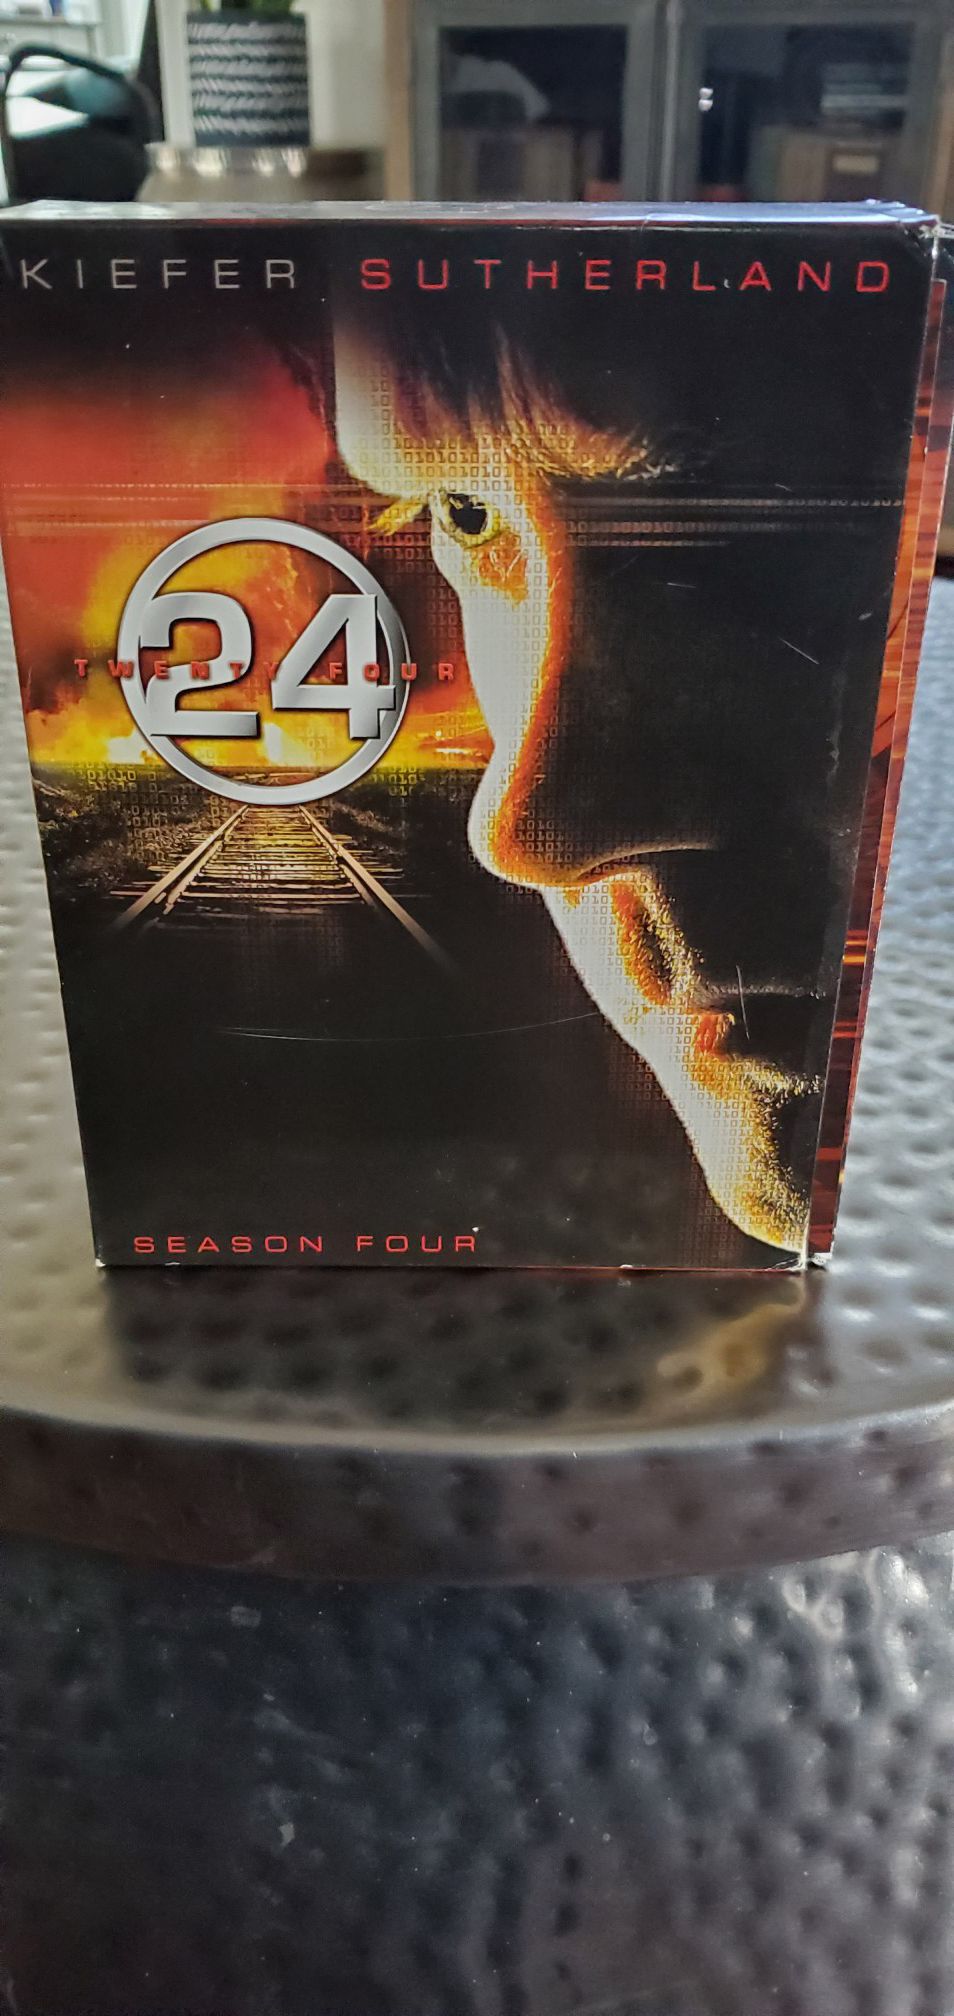 24 Season Four DVD set